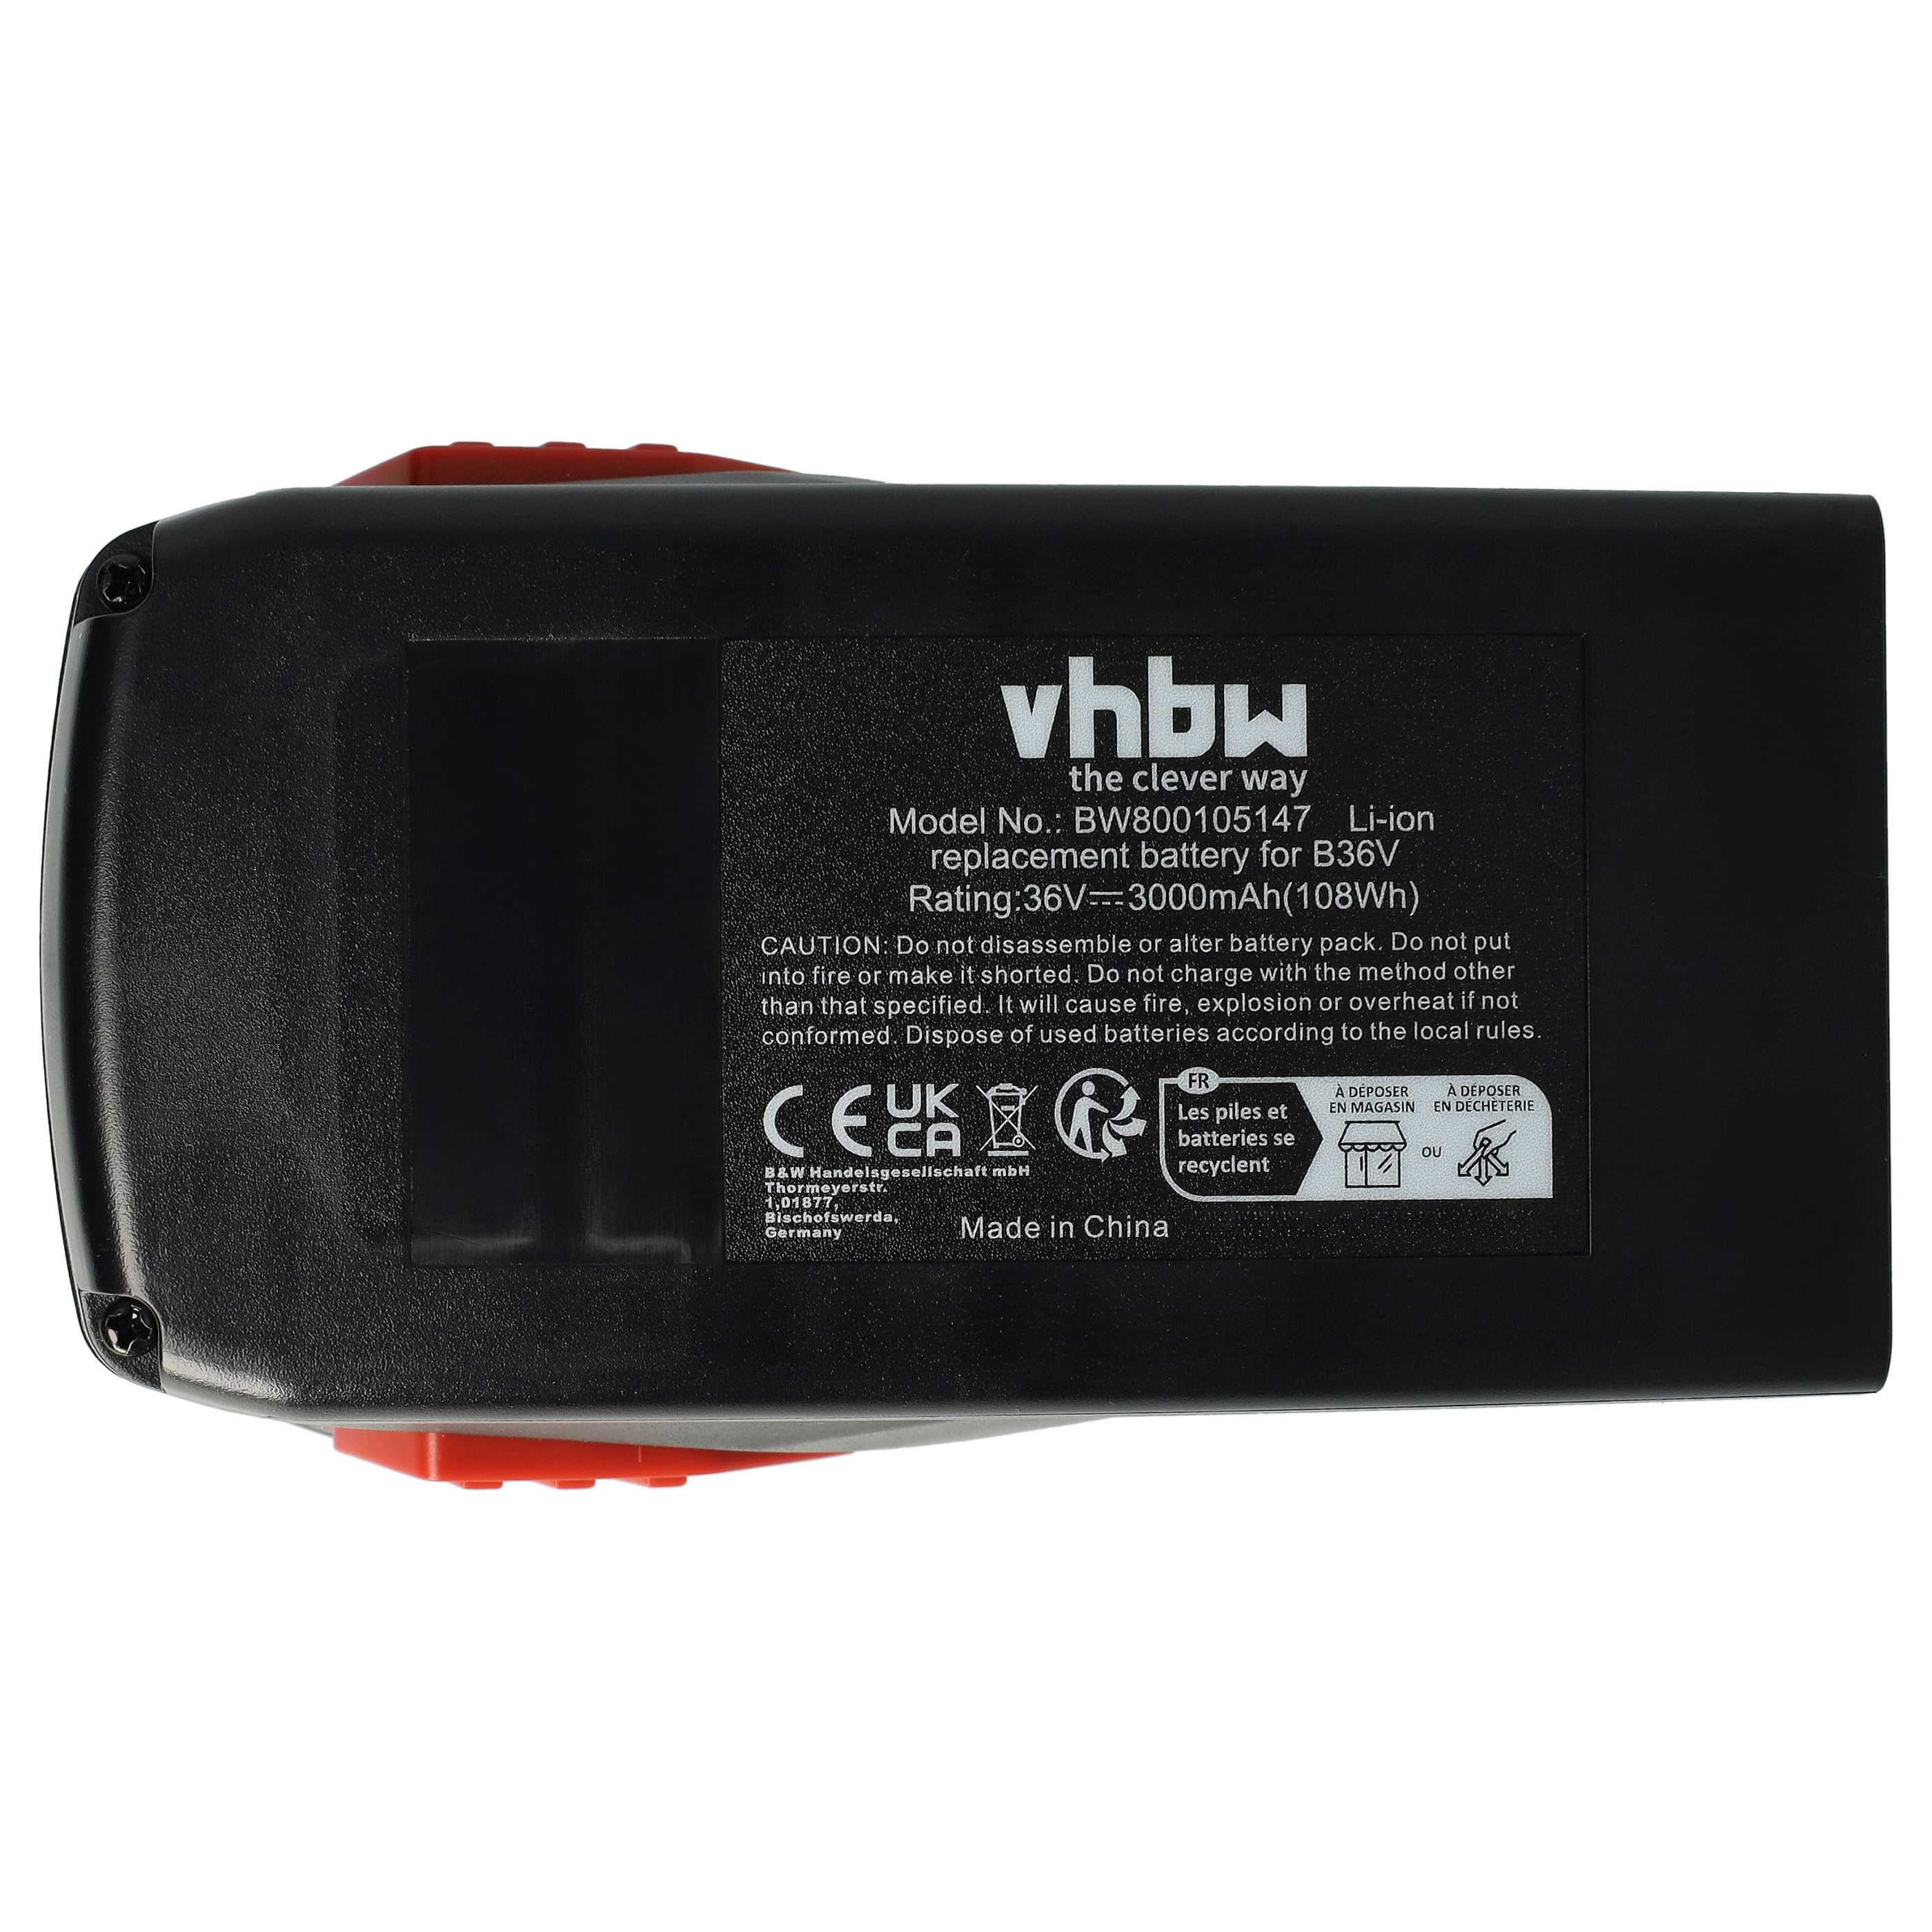 Batterie remplace Hilti B36, B36V, 2203932, 418009 pour outil électrique - 3000 mAh, 36 V, Li-ion